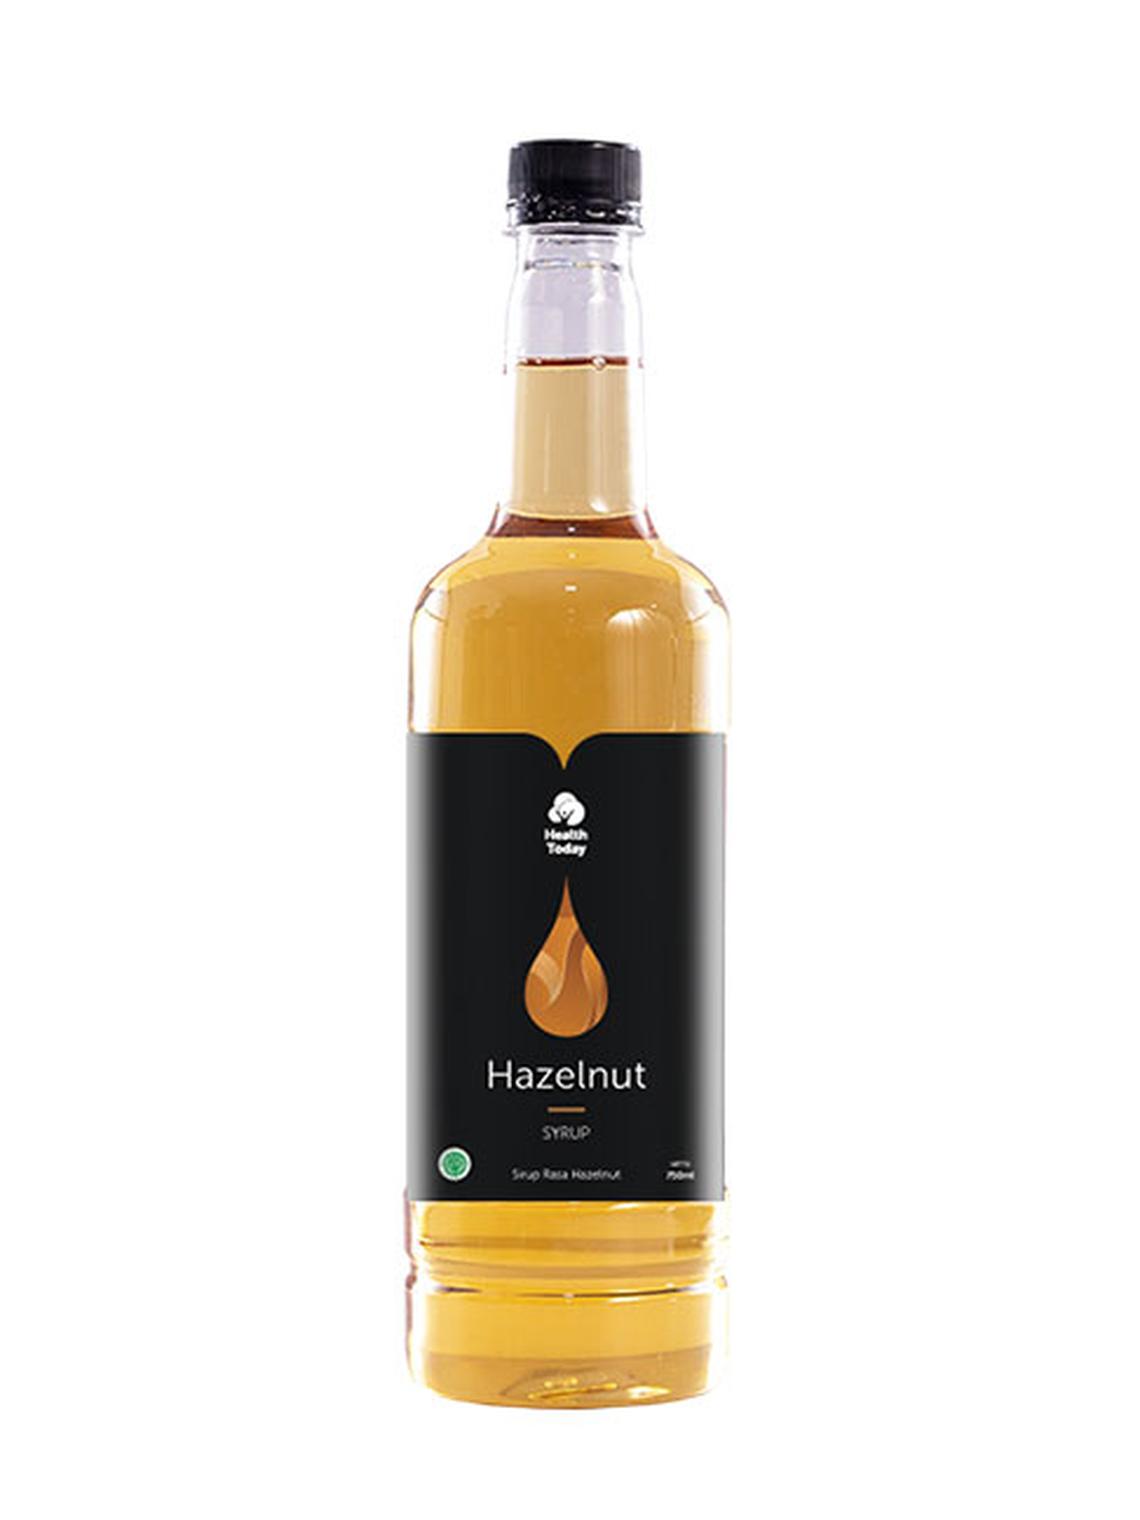 Health Today Syrup Hazelnut 750 ml